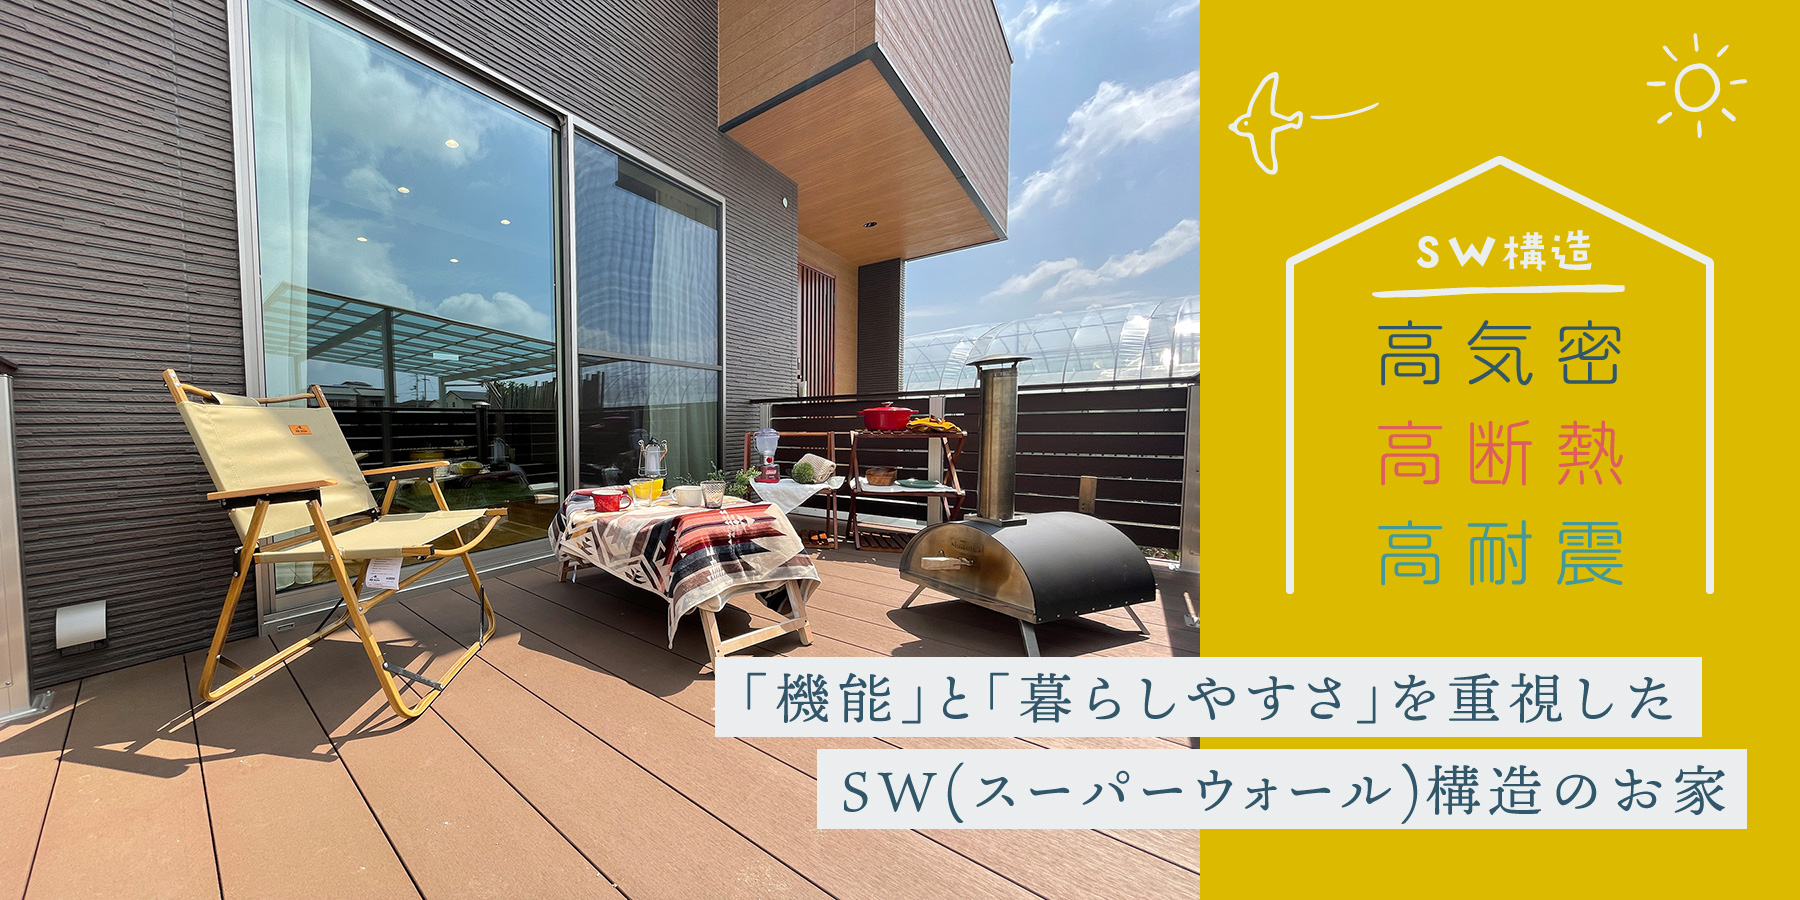 高気密・高断熱・高耐震 「機能」と「暮らしやすさ」を重視したSW(スーパーウォール)構造のお家